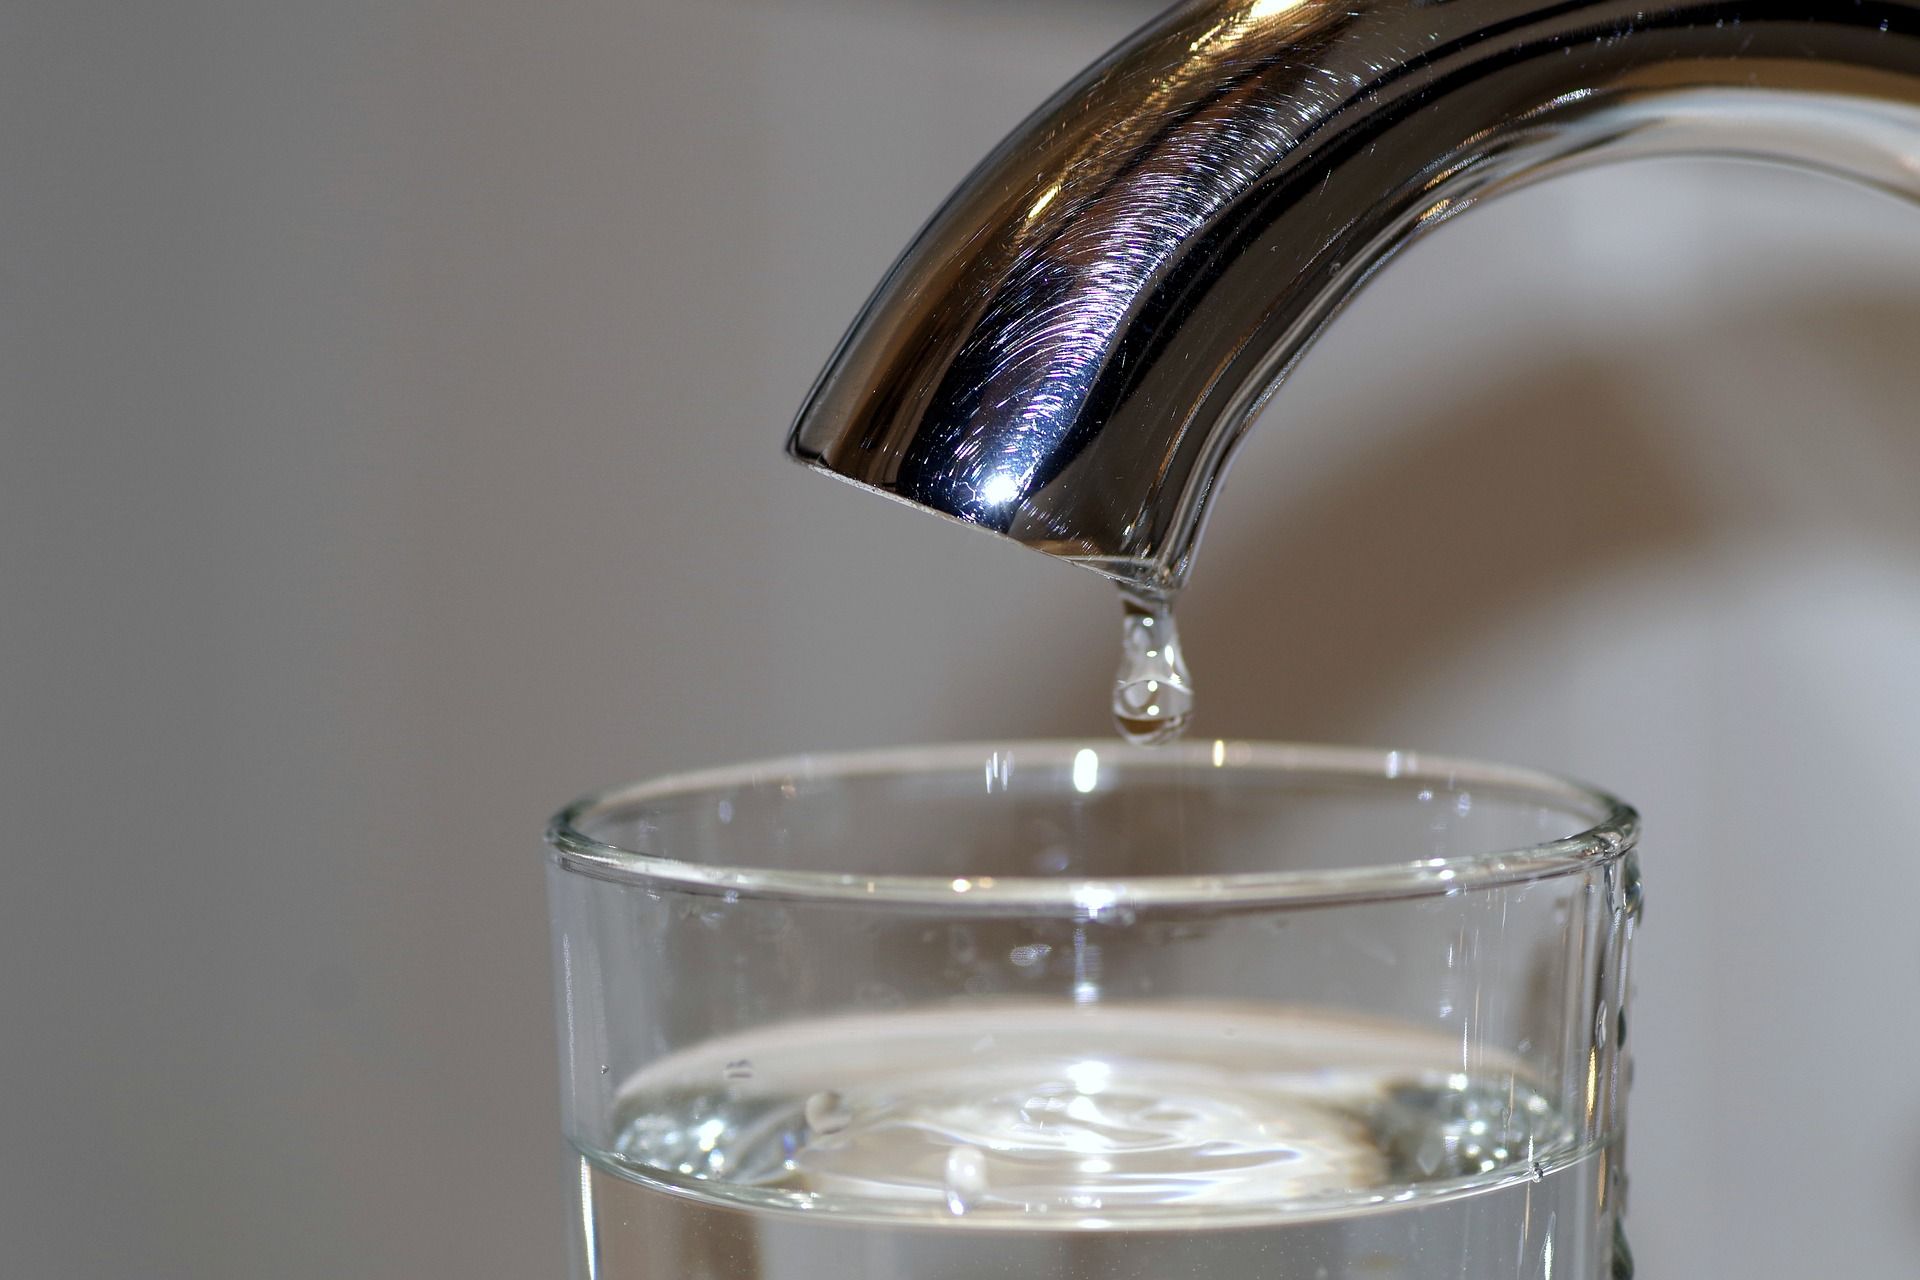 Plastica nell’acqua potabile dei rubinetti in tutto il mondo: la conferma da una ricerca USA